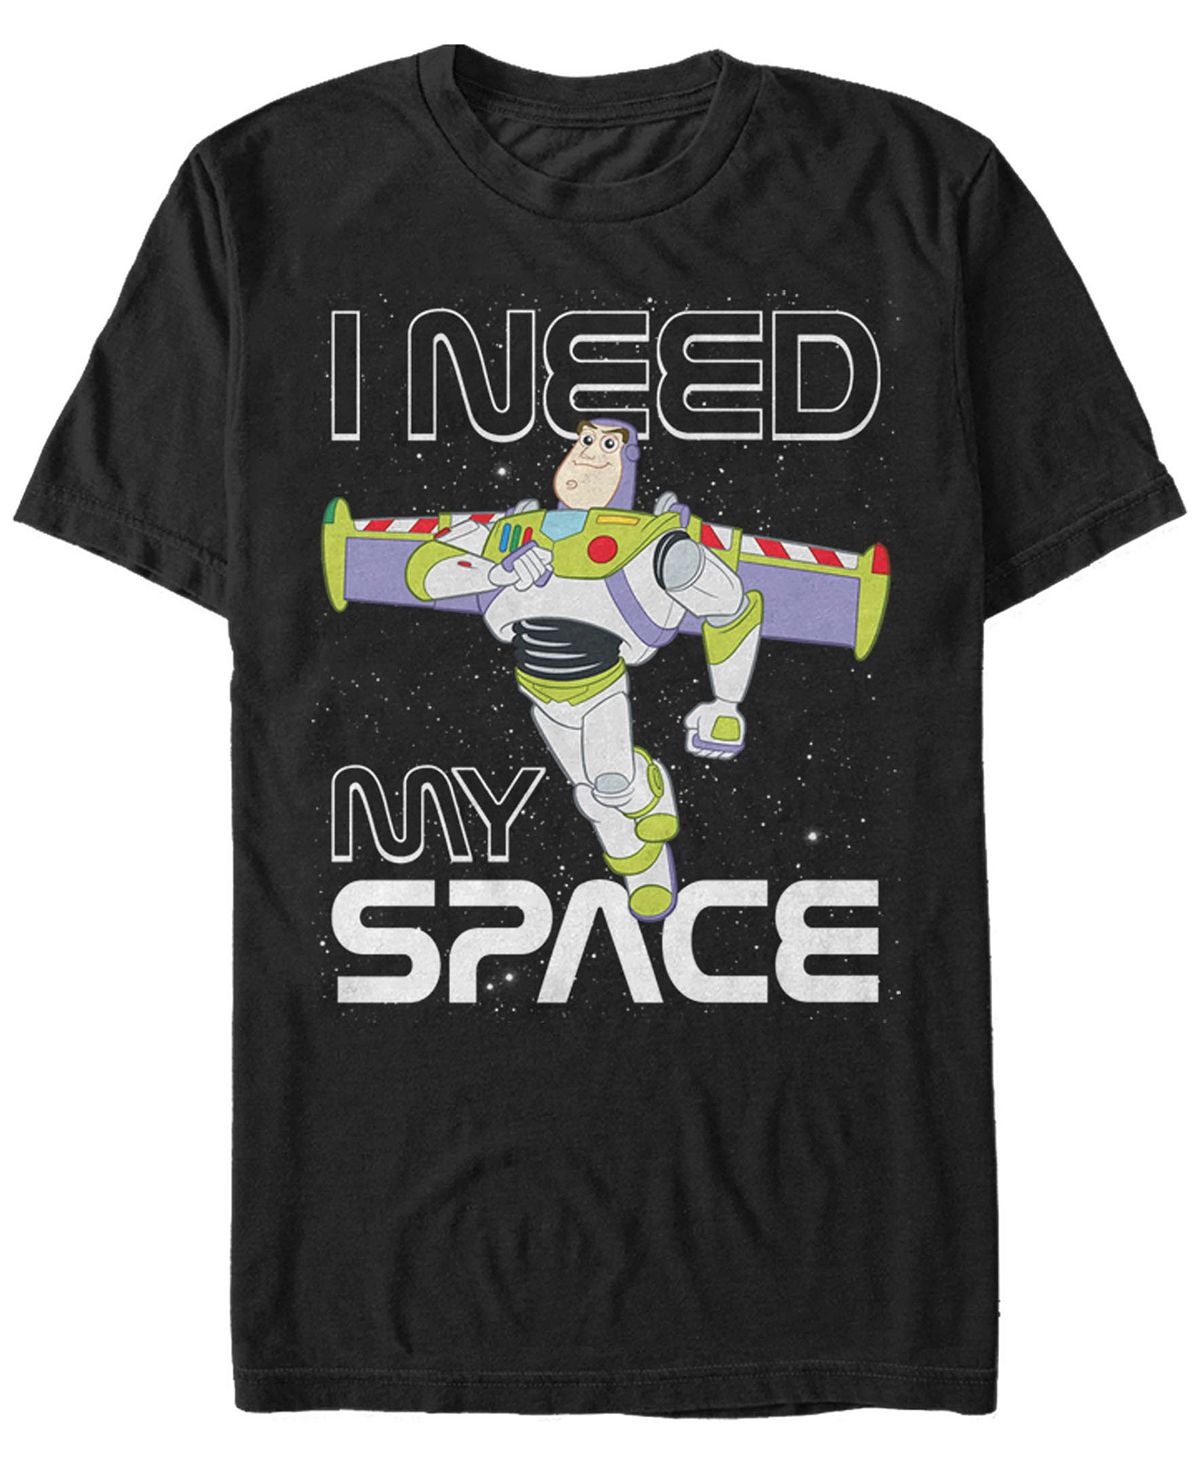 Мужская футболка с коротким рукавом из мультфильма «история игрушек» disney pixar buzz need space Fifth Sun, черный